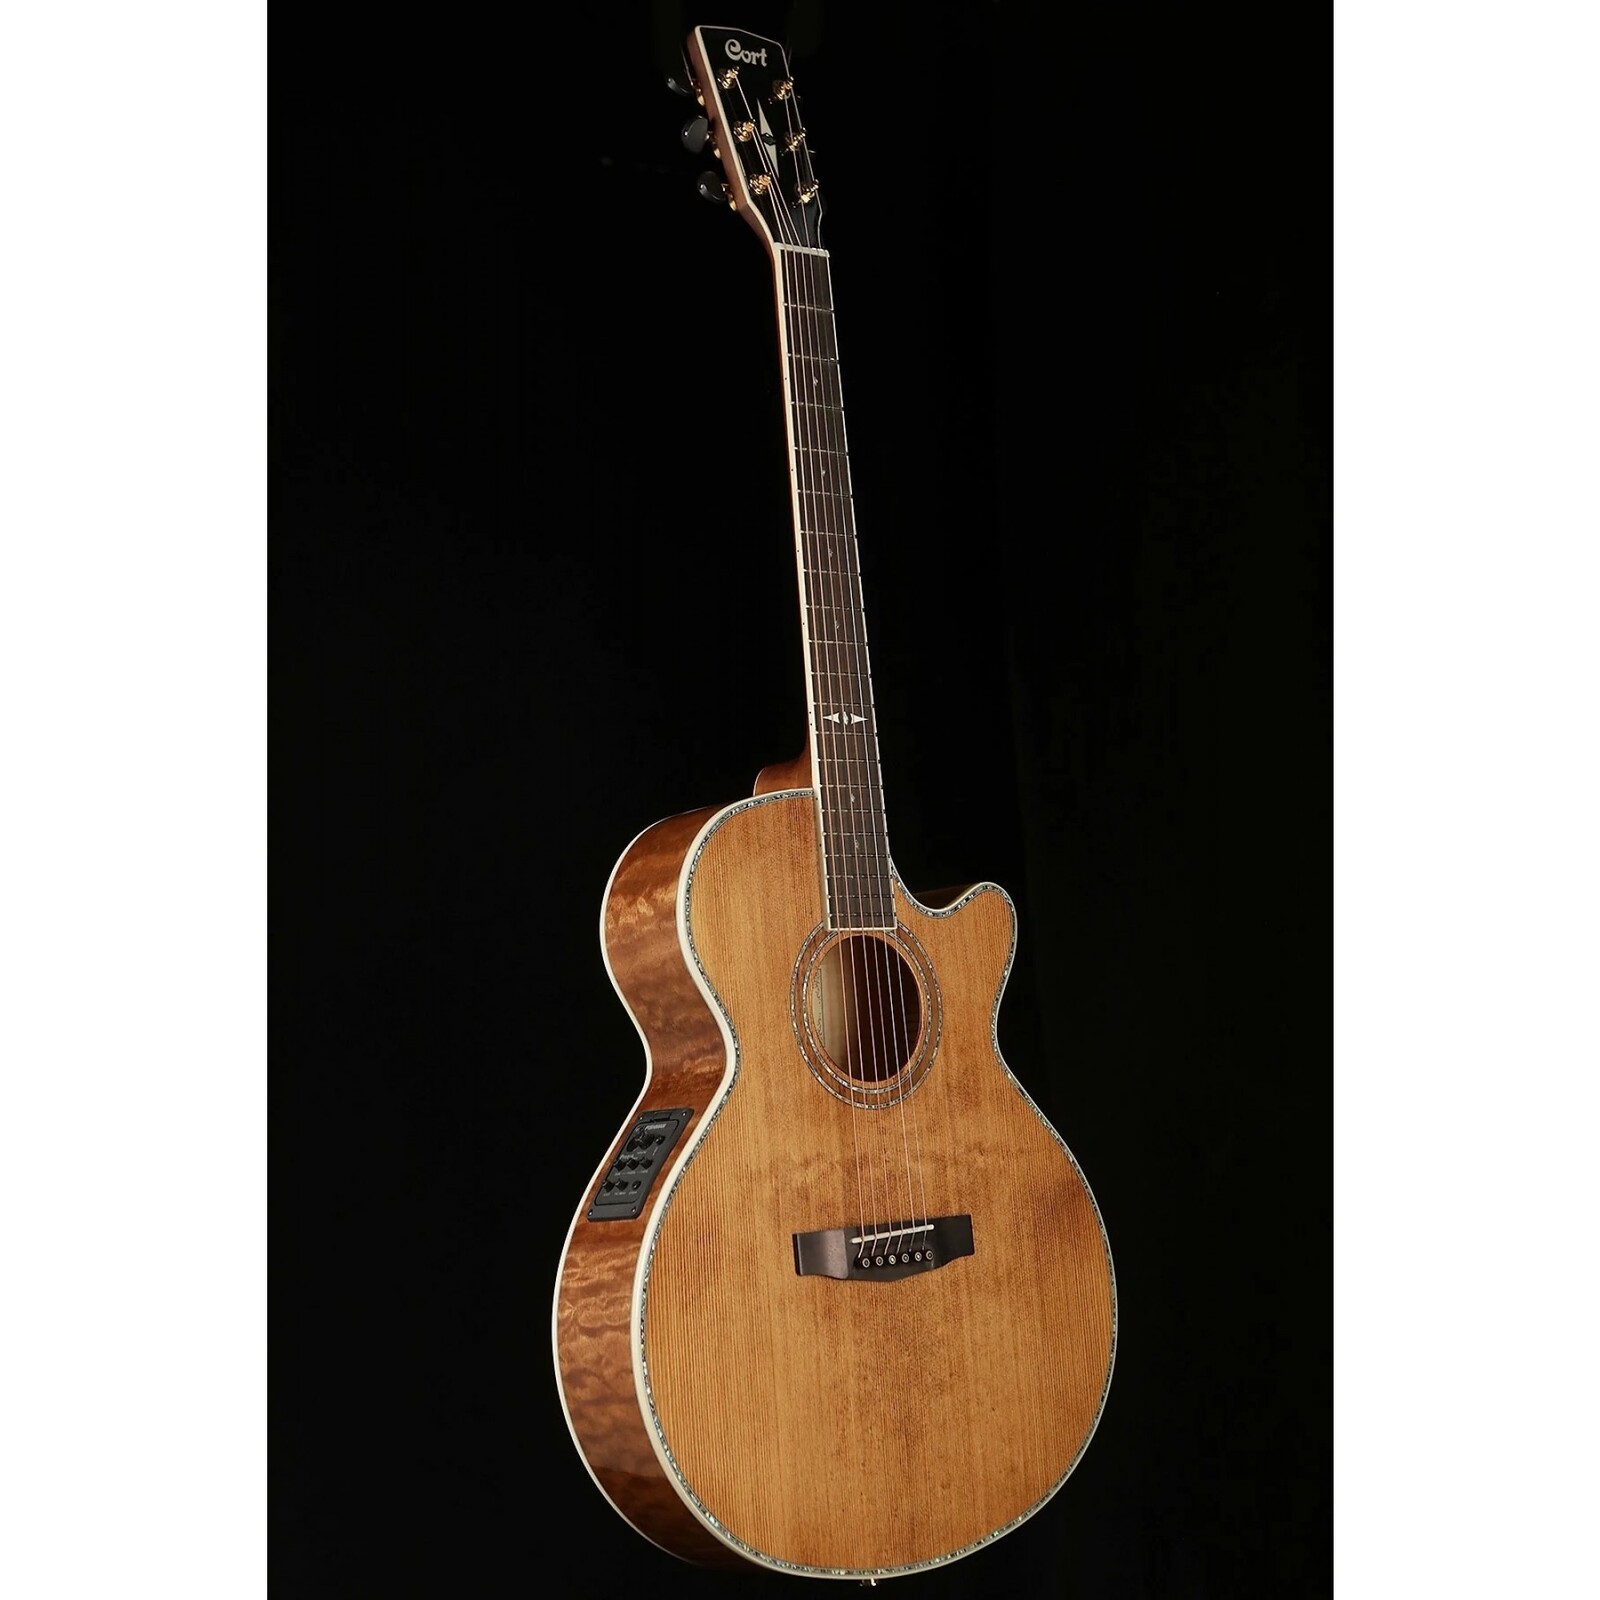 Cort C11597 SFX-10 ABR Acoustic Electric Guitar